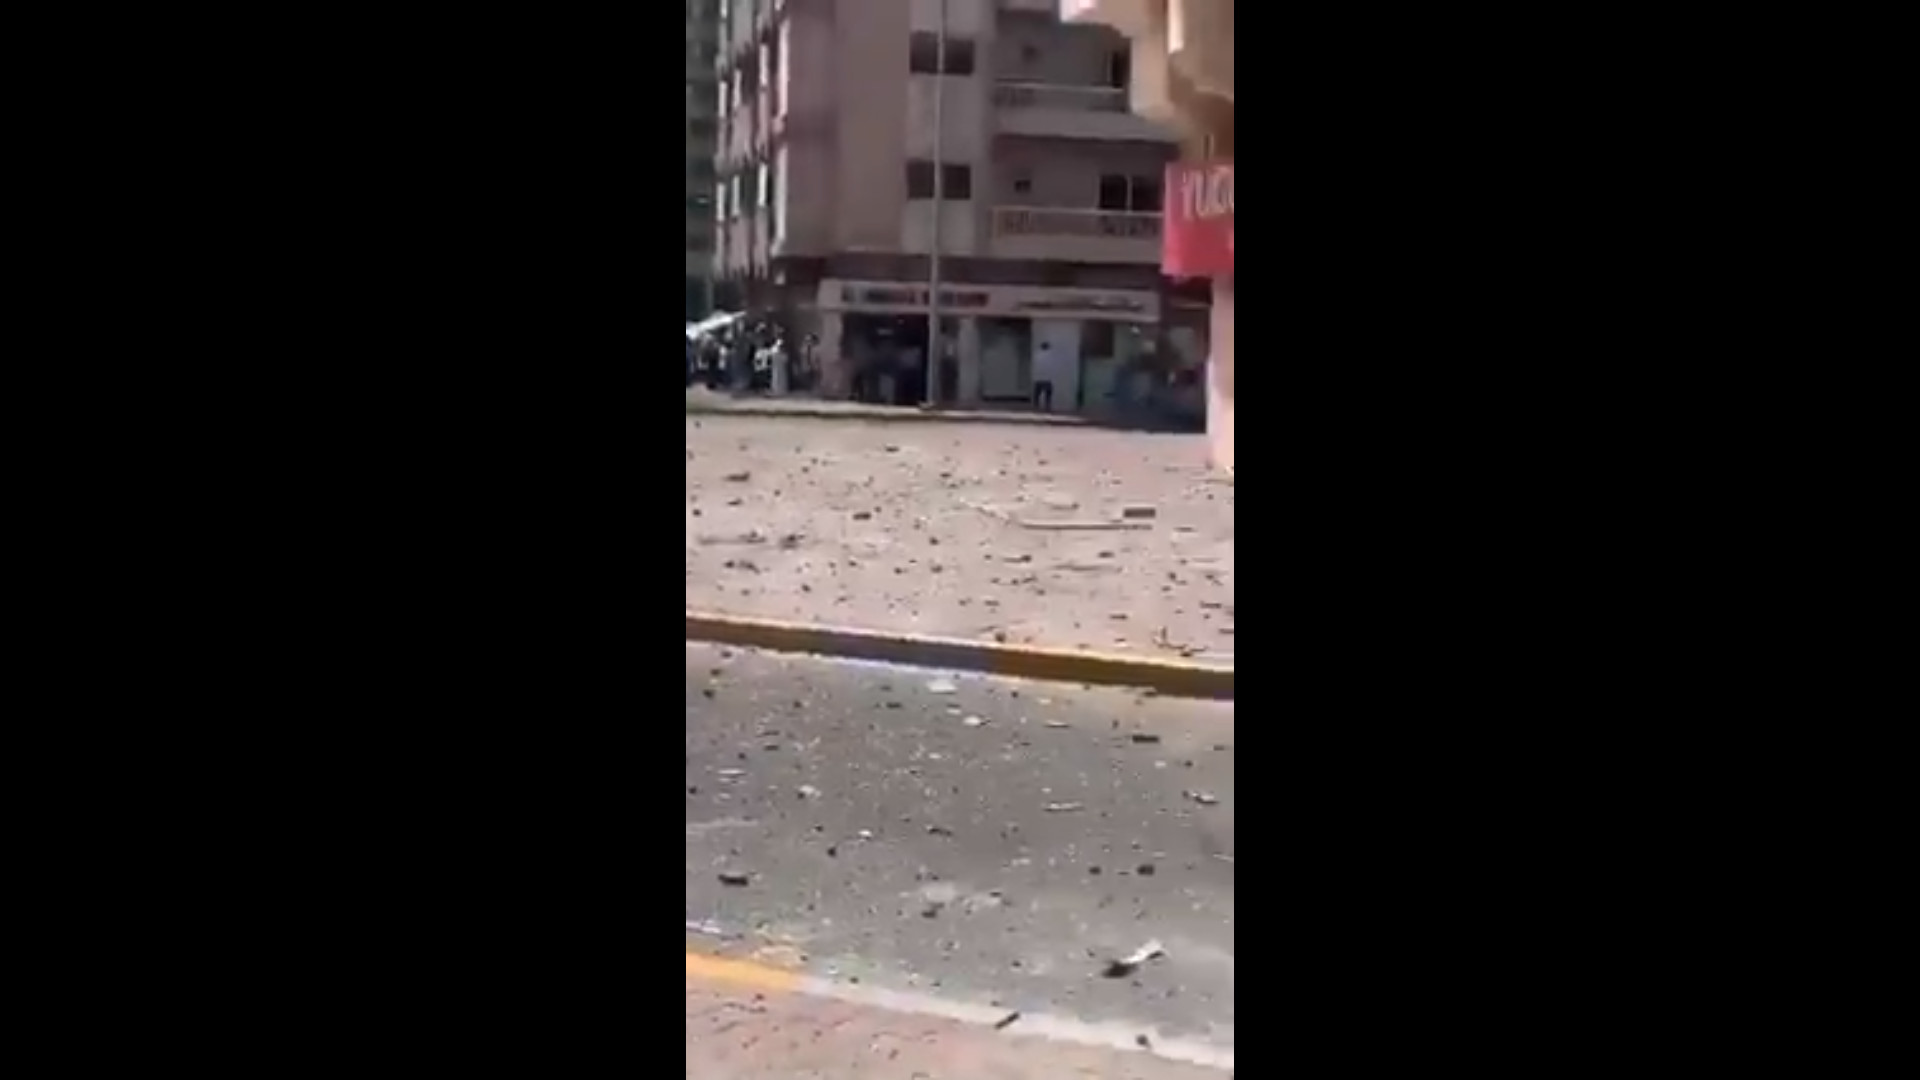 بالفيديو/ انفجار في مطعم بأبو ظبي والشرطة تعلن أنه ناجم عن تسرب غاز وتسبب في إصابات من طفيفة إلى متوسطة